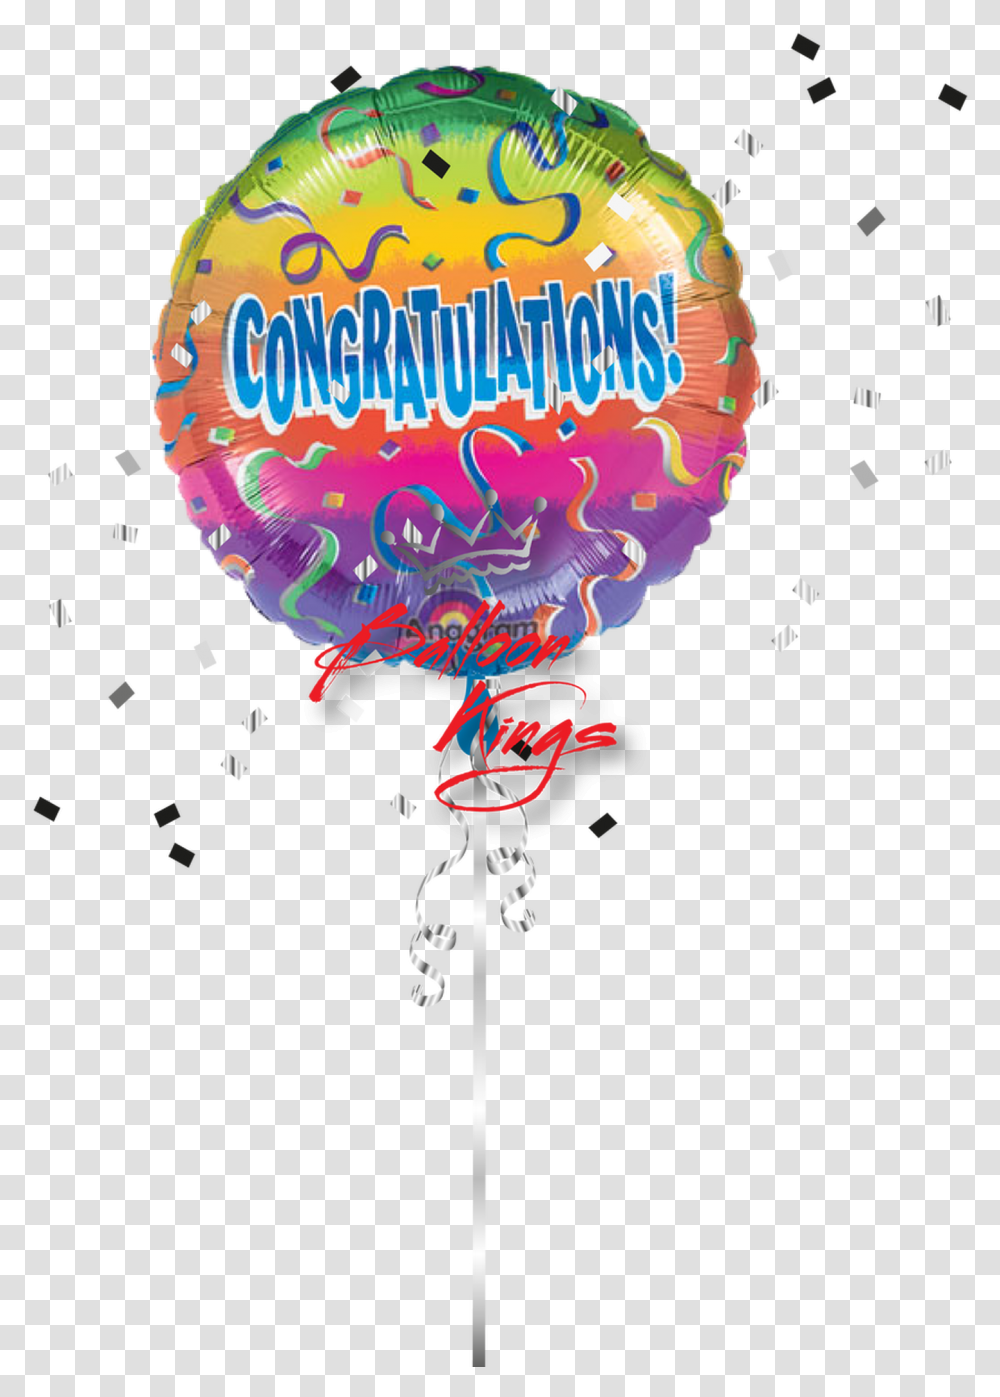 Congrats Rainbow Congrats Balloon, Paper, Poster Transparent Png